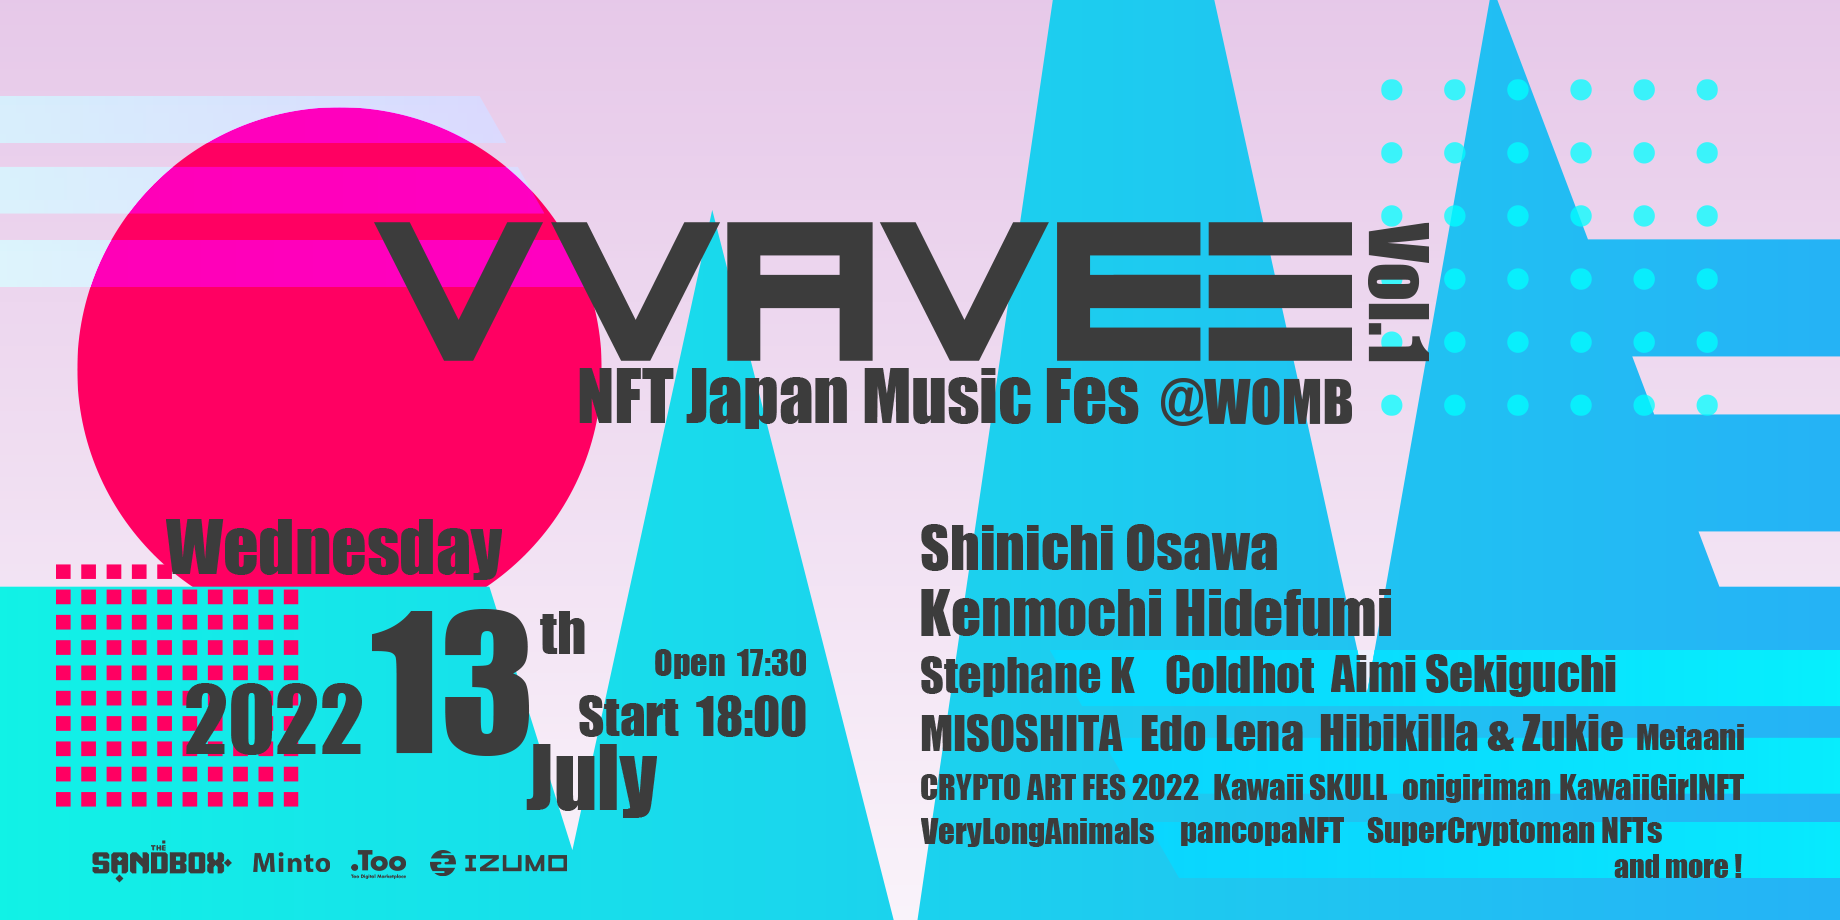 VVAVE3 - NFT Japan Music Fes vol.1 - @WOMB